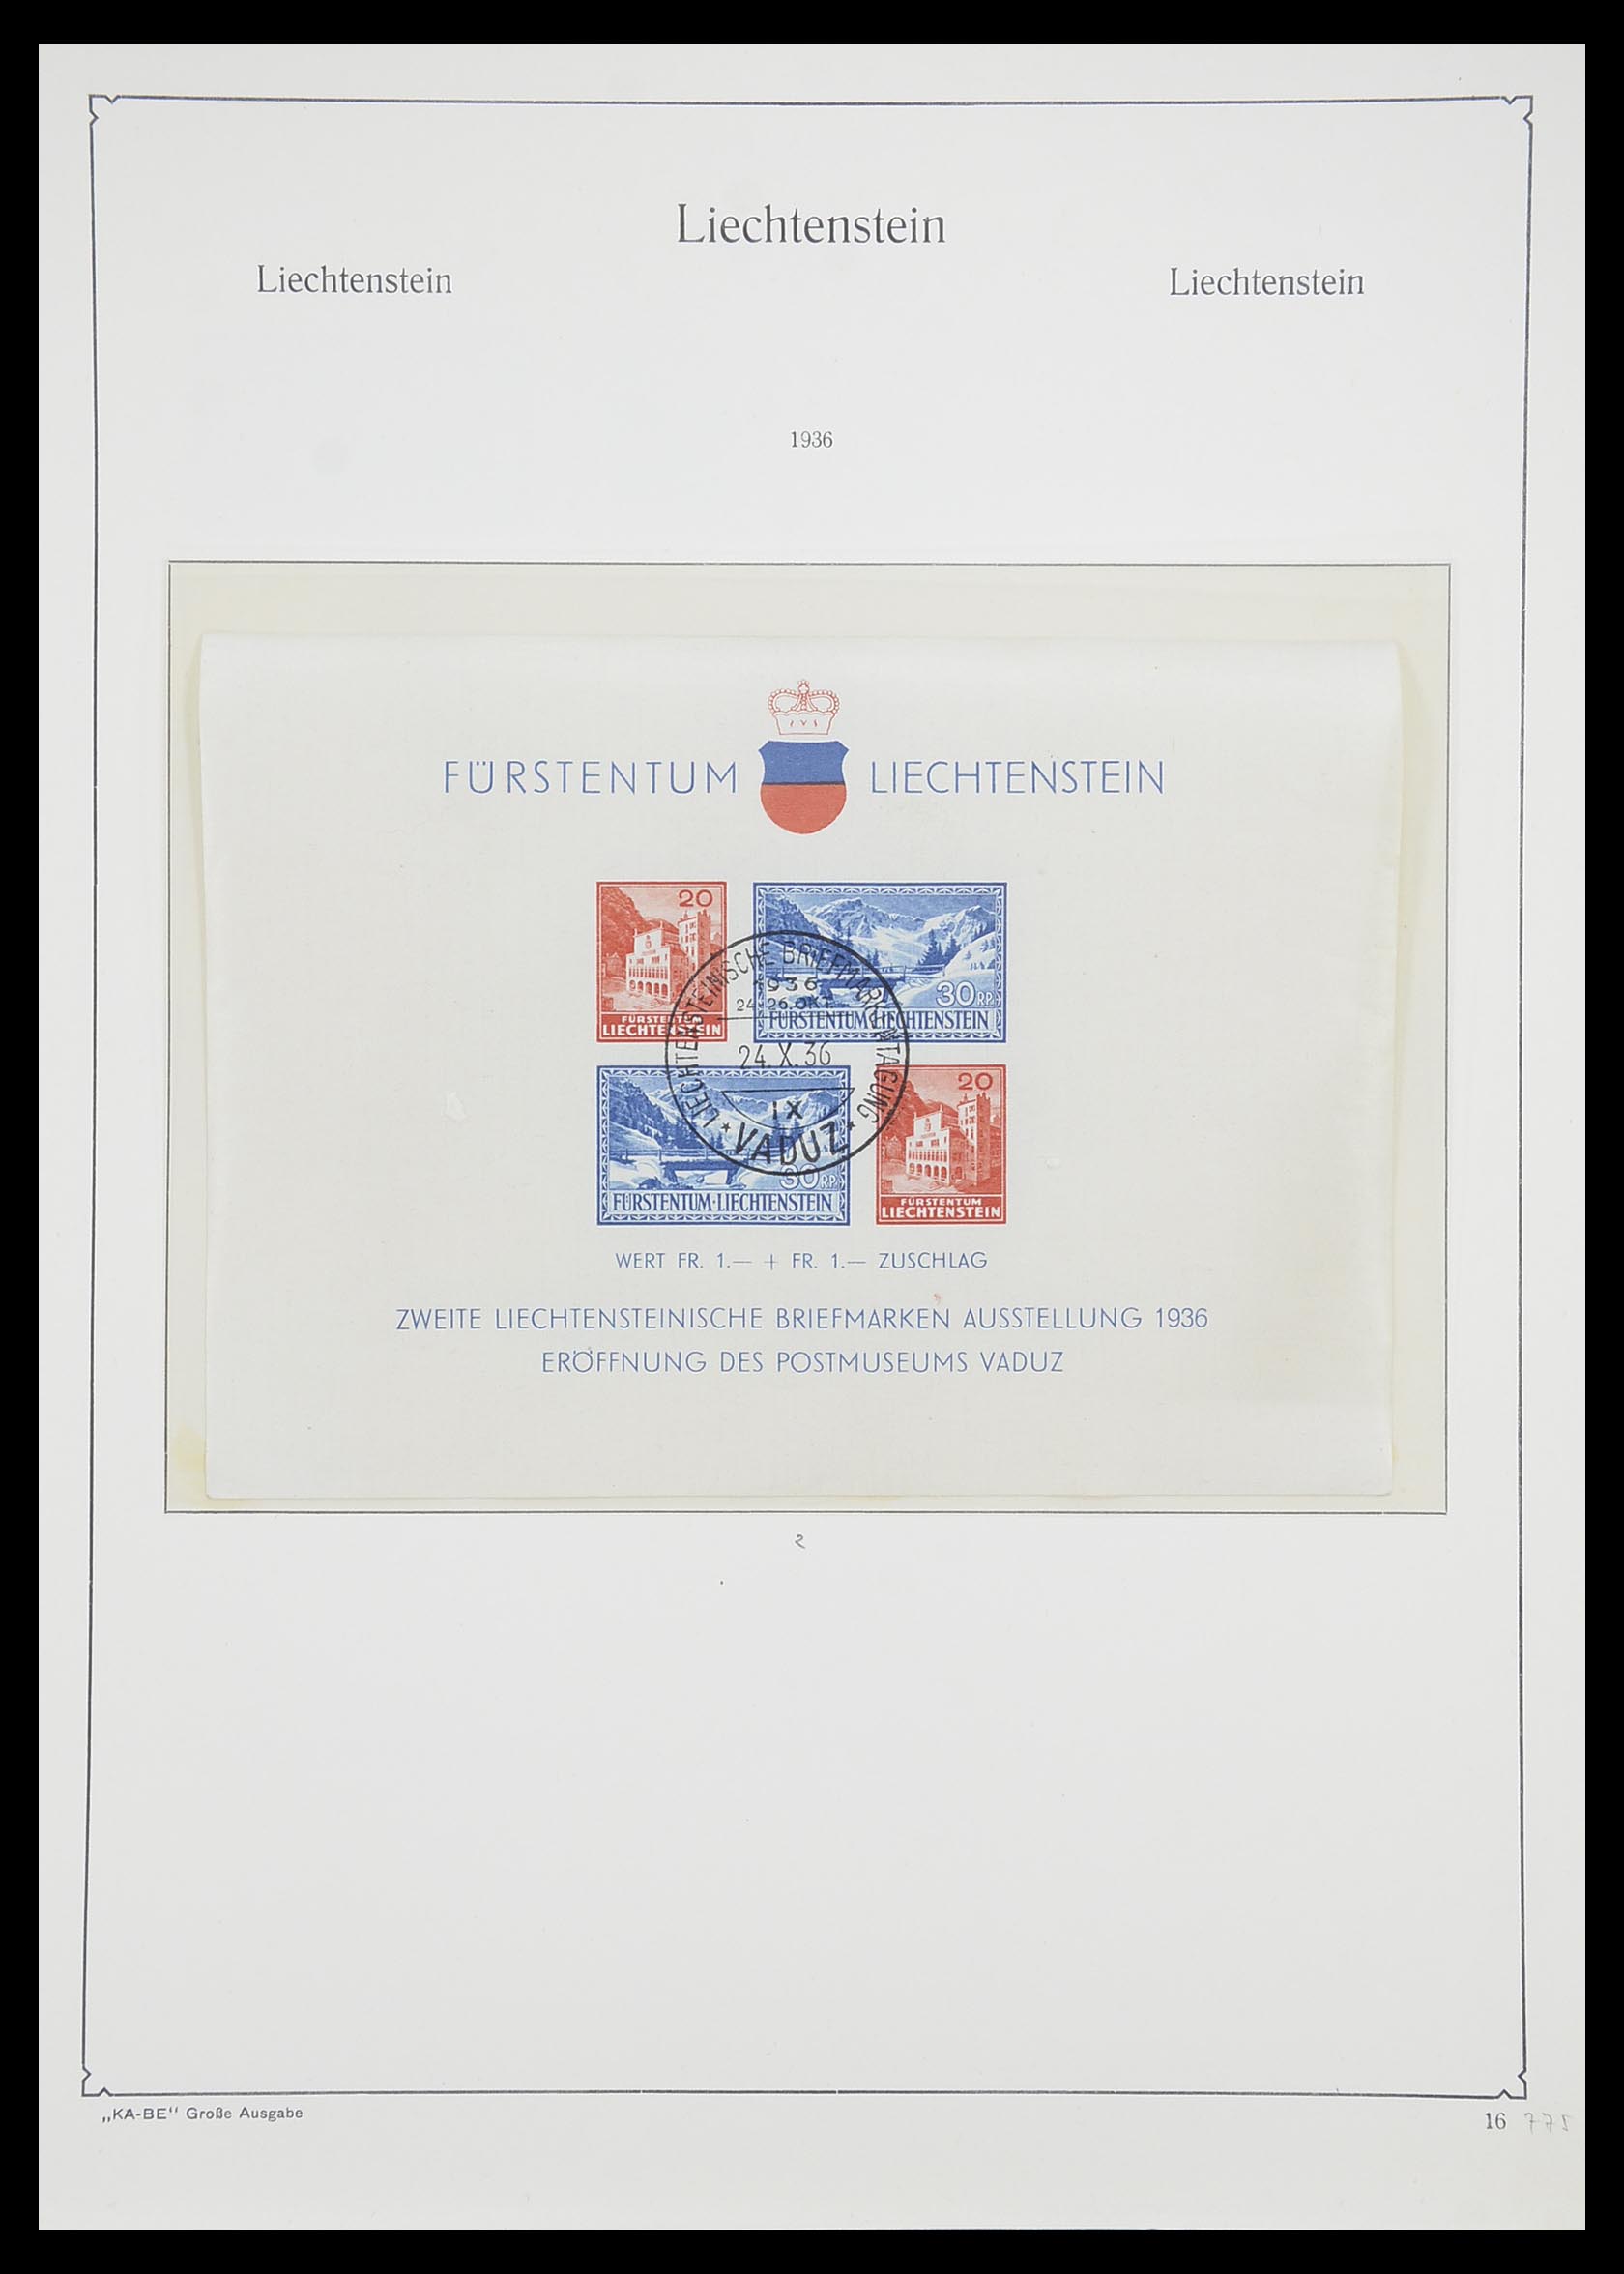 33493 018 - Stamp collection 33493 Liechtenstein 1912-2008.